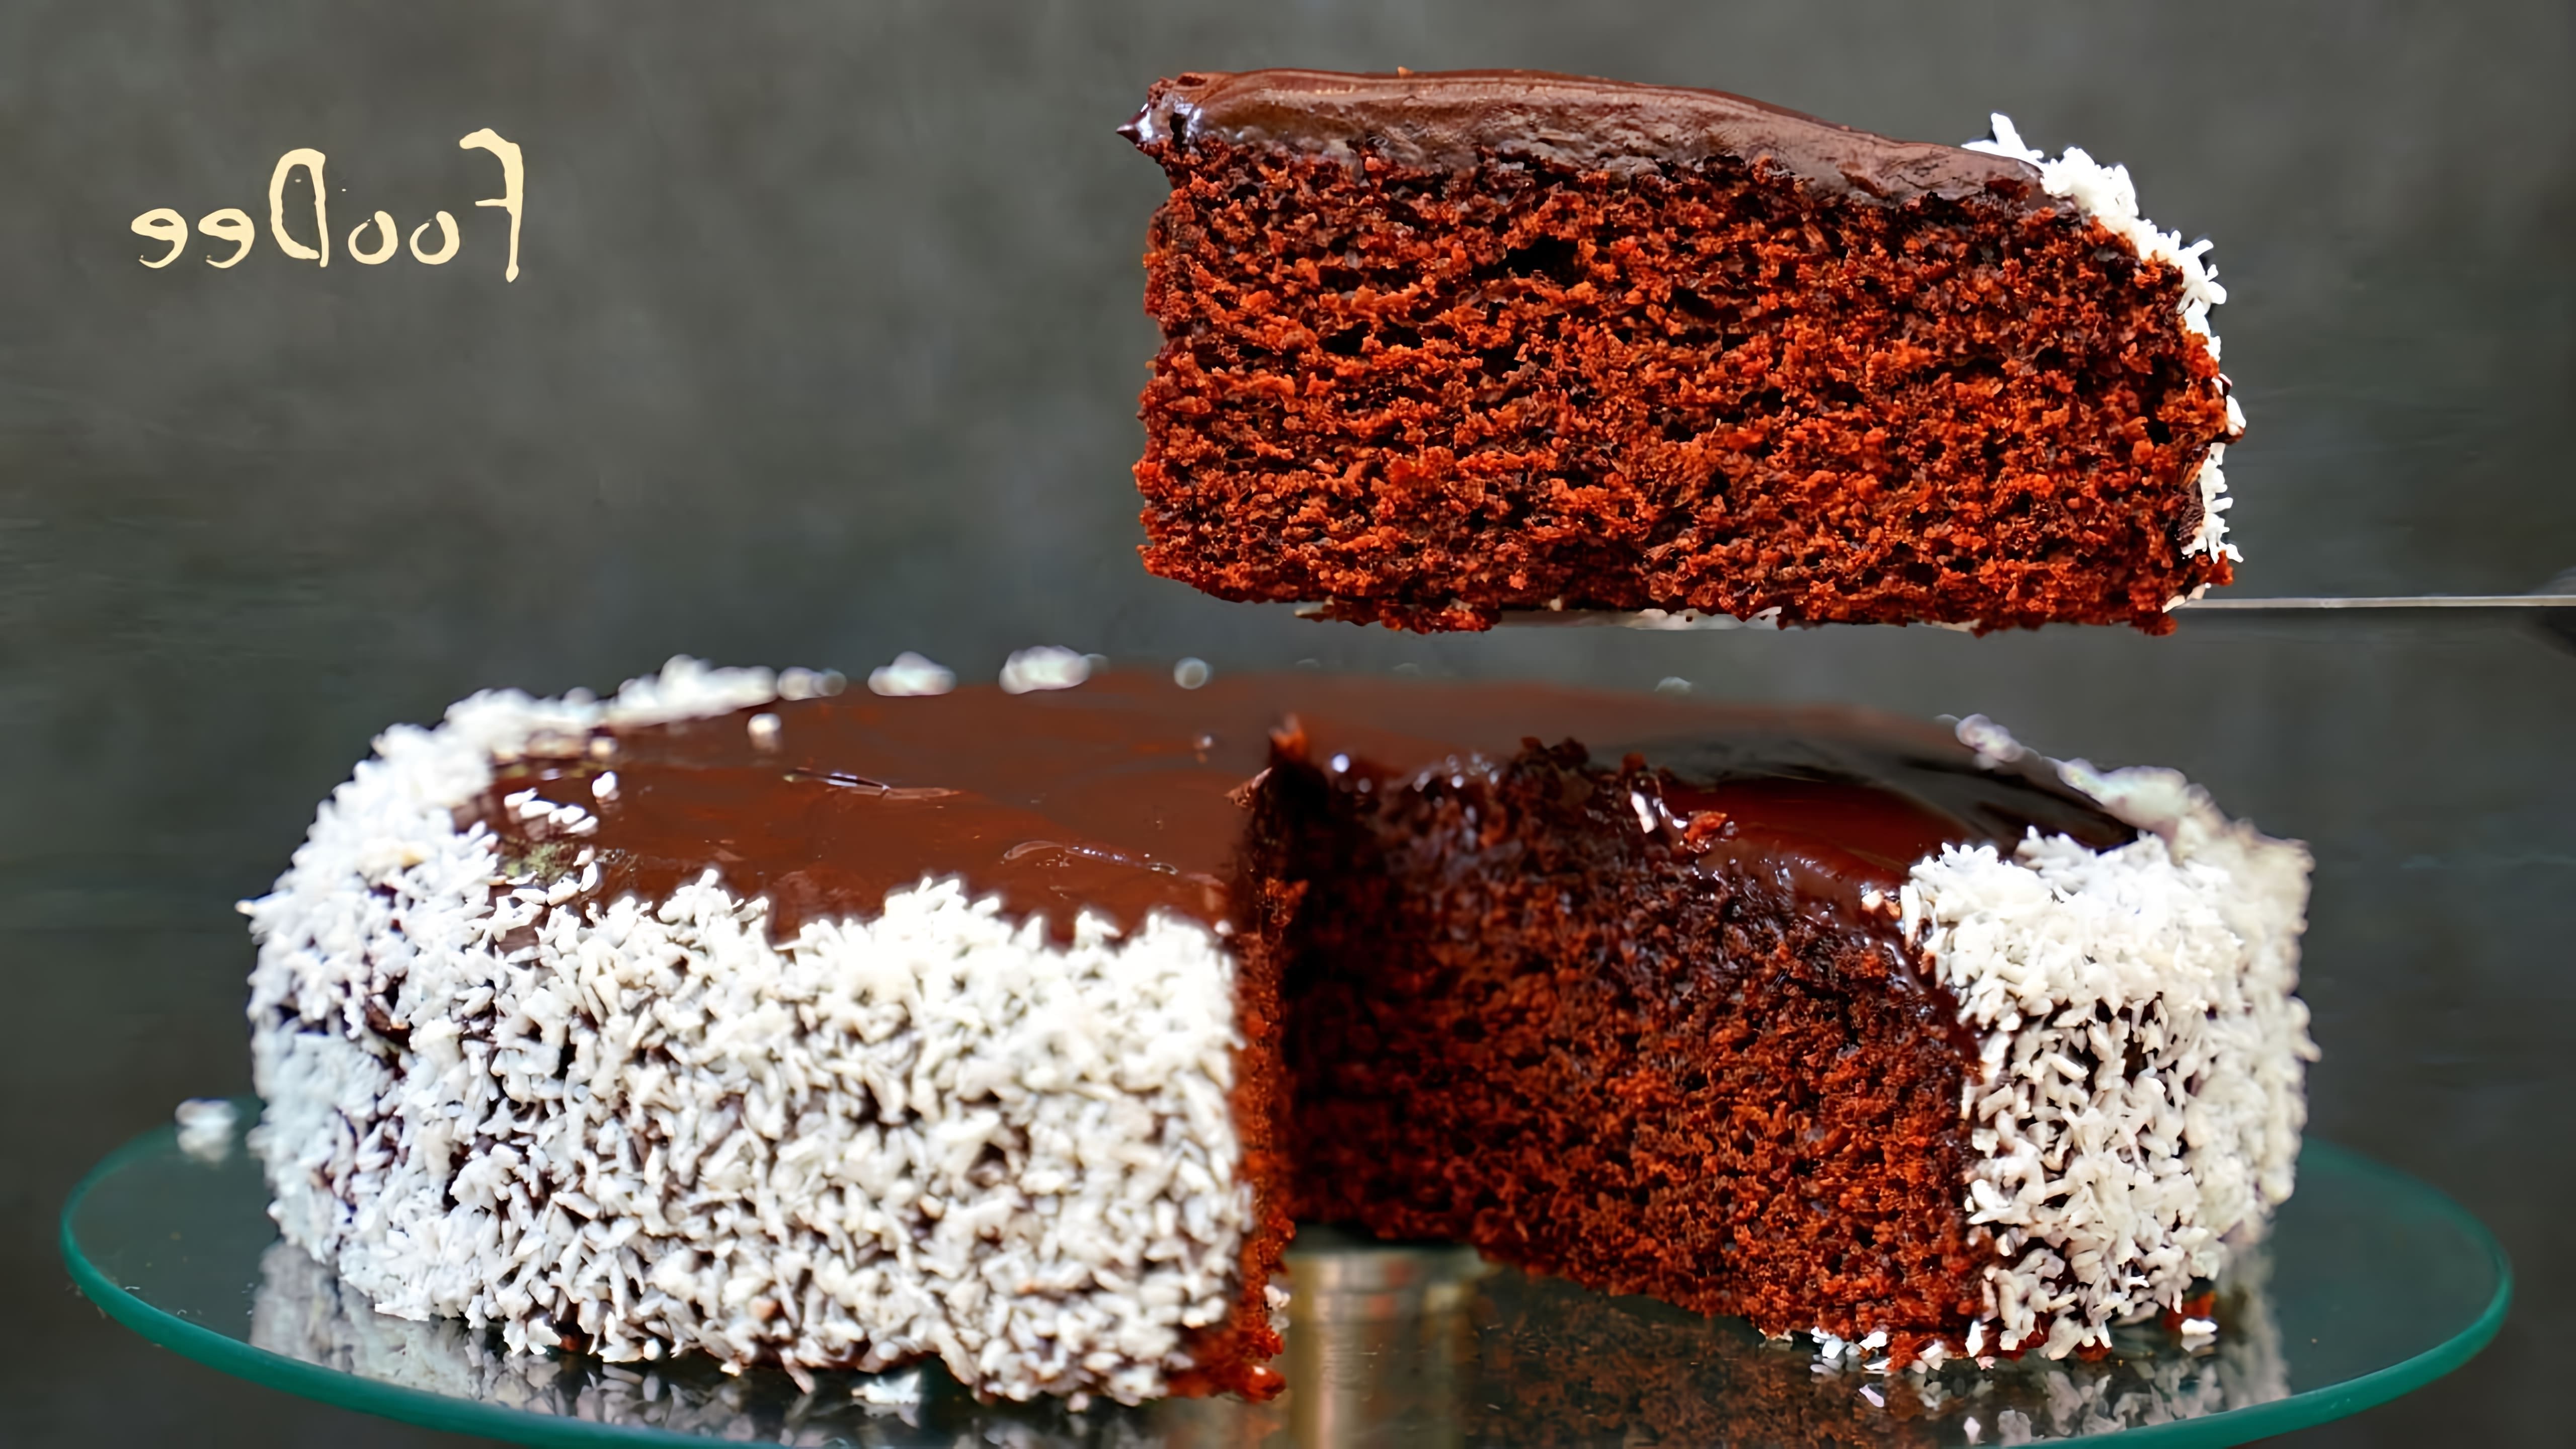 Видео как приготовить простой и недорогой "сумасшедший торт", также известный как шоколадный торт